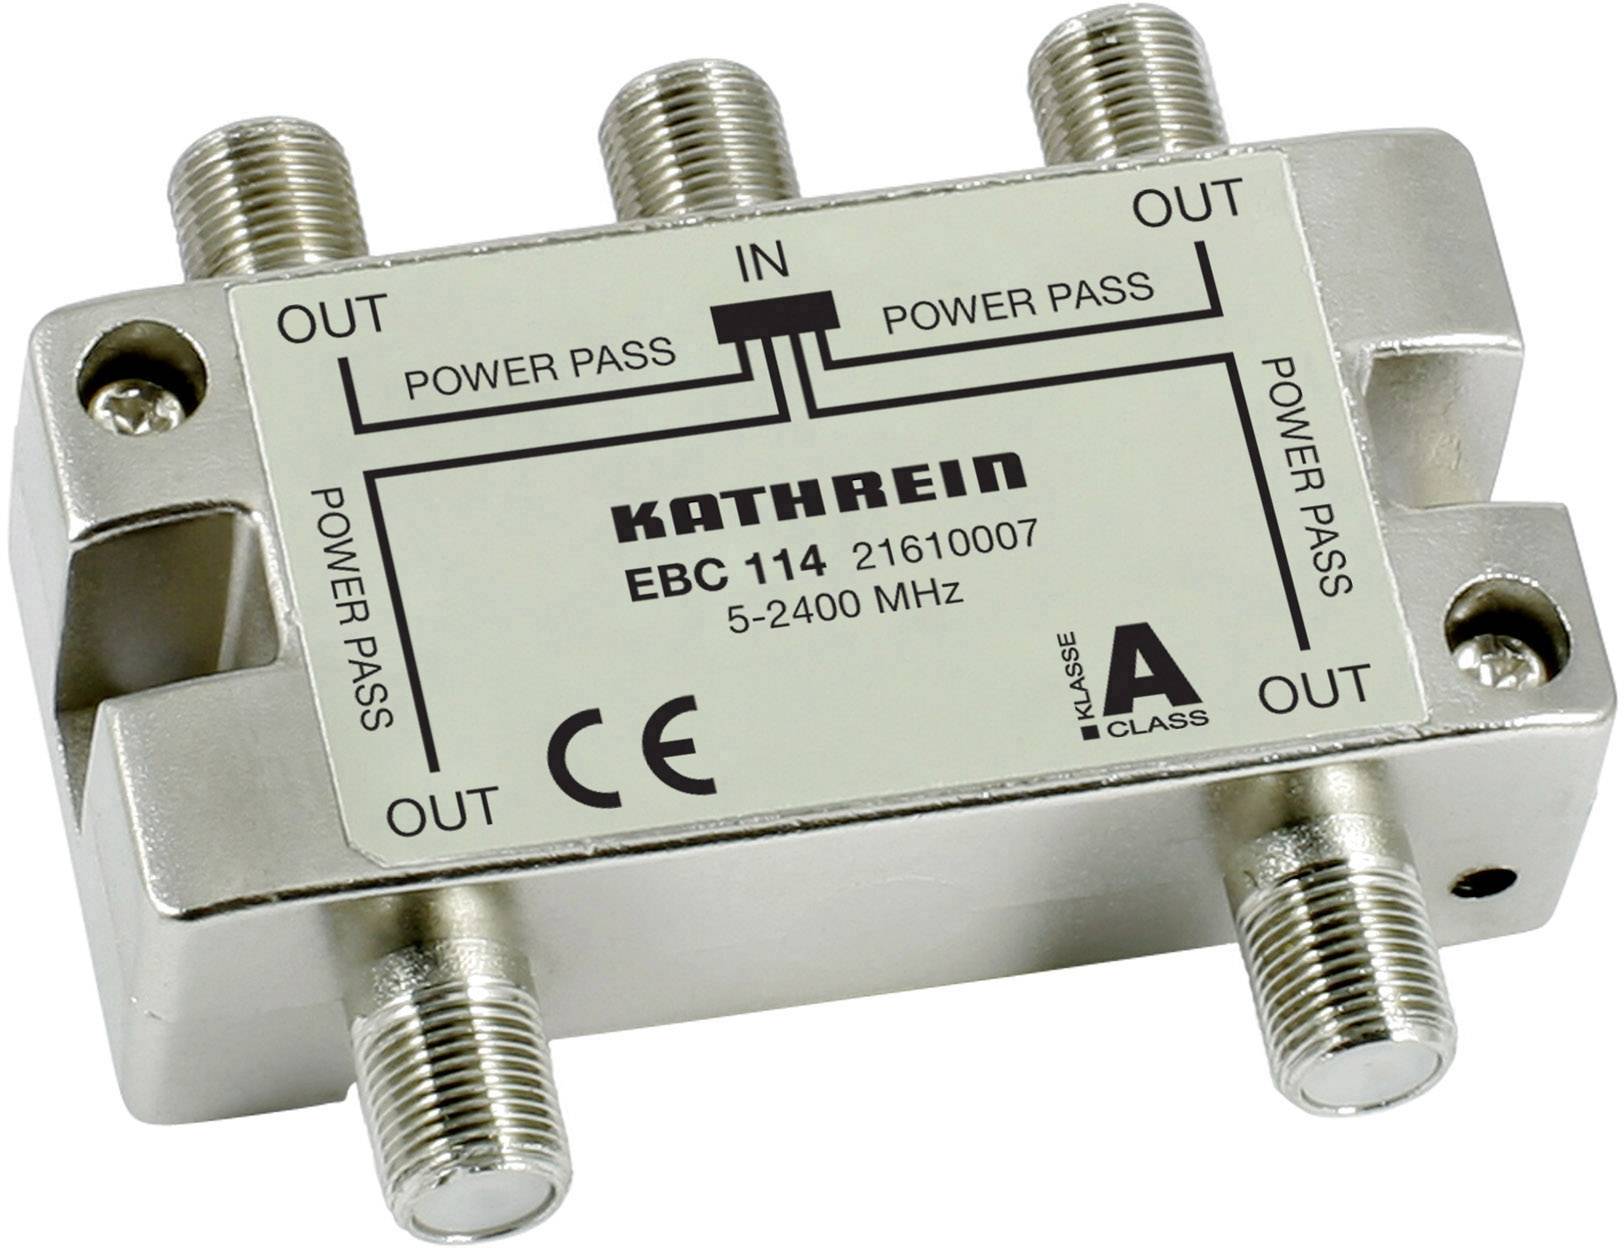 KATHREIN EBC-114 4fach-F-Verteiler 5-2400 MHz Schirmklasse A